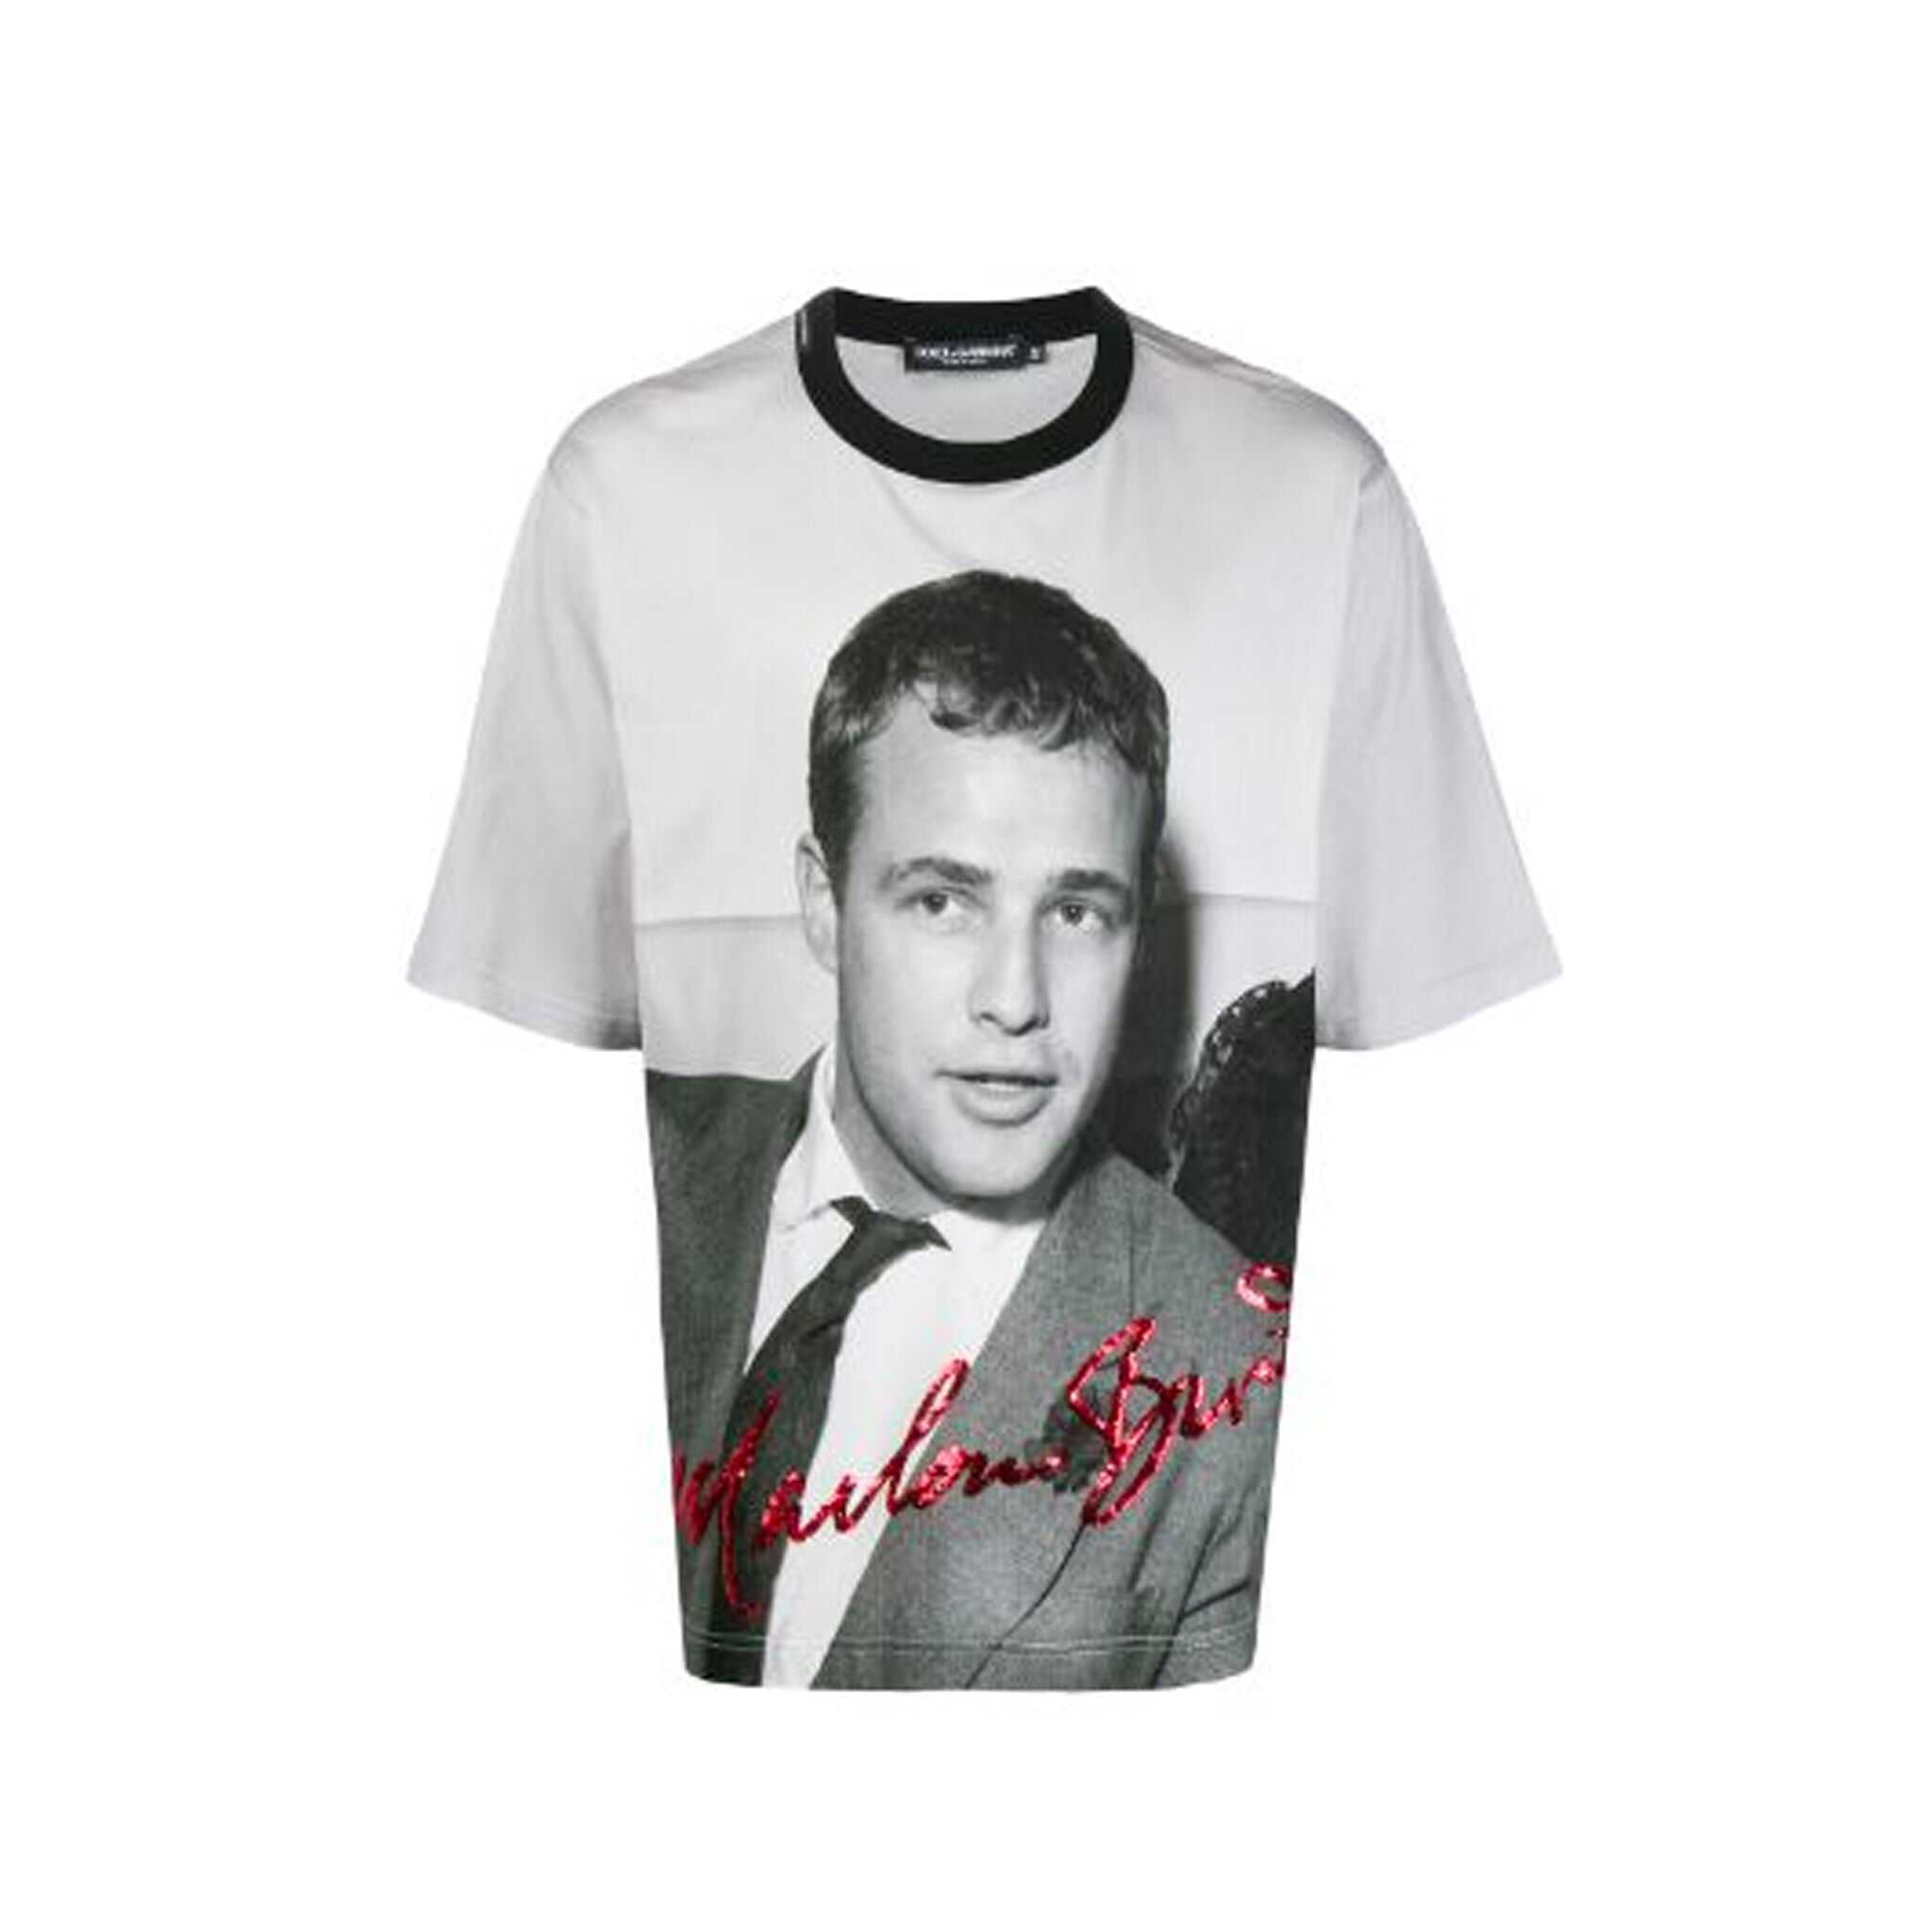 Dolce & Gabbana Dolce & Gabbana Marlon Brando T-Shirt Black